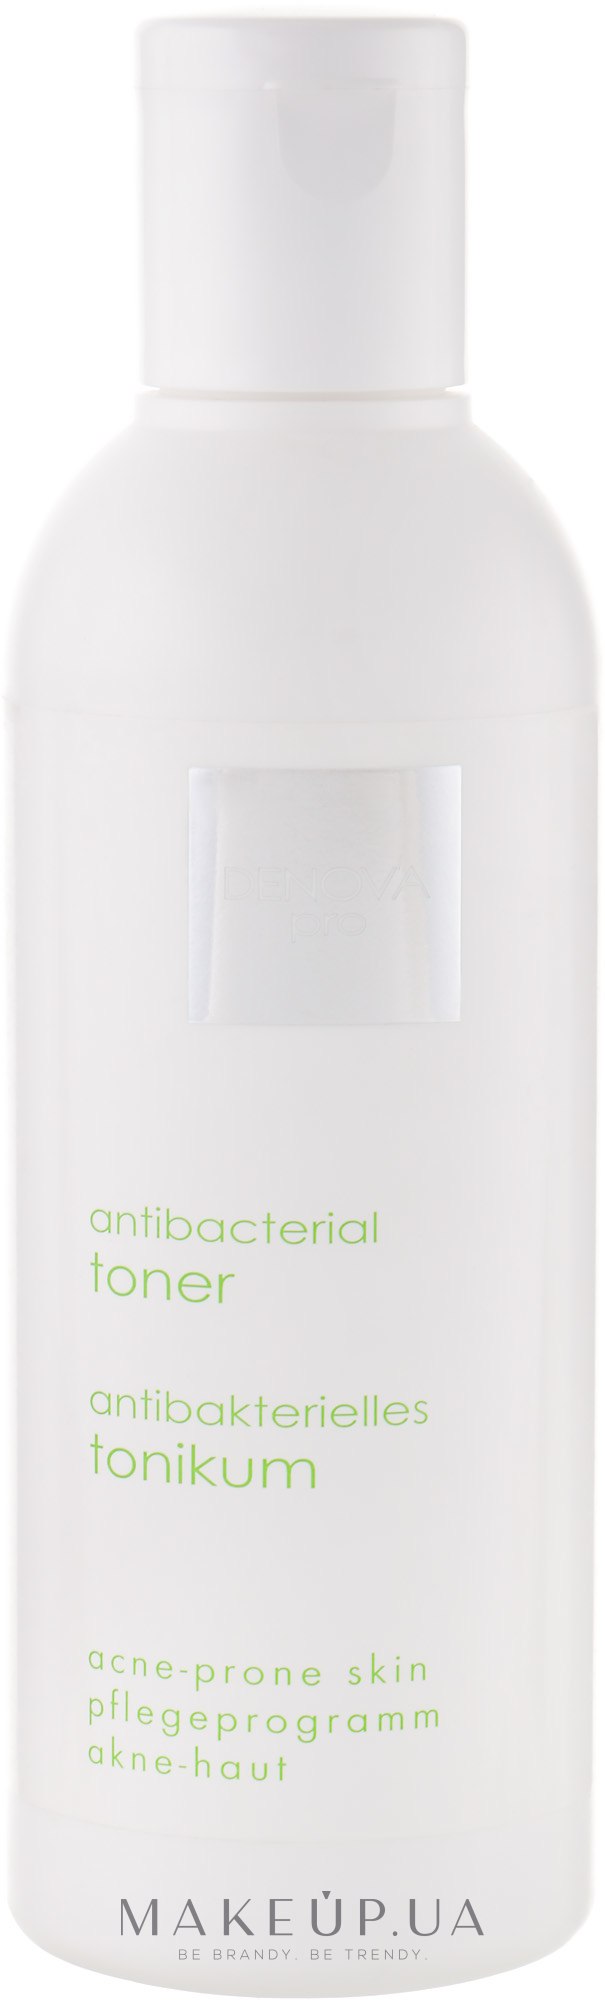 Антибактеріальний тонік для шкіри з акне - Denova Pro Acne-Prone Skin Antibacterial Toner — фото 200ml